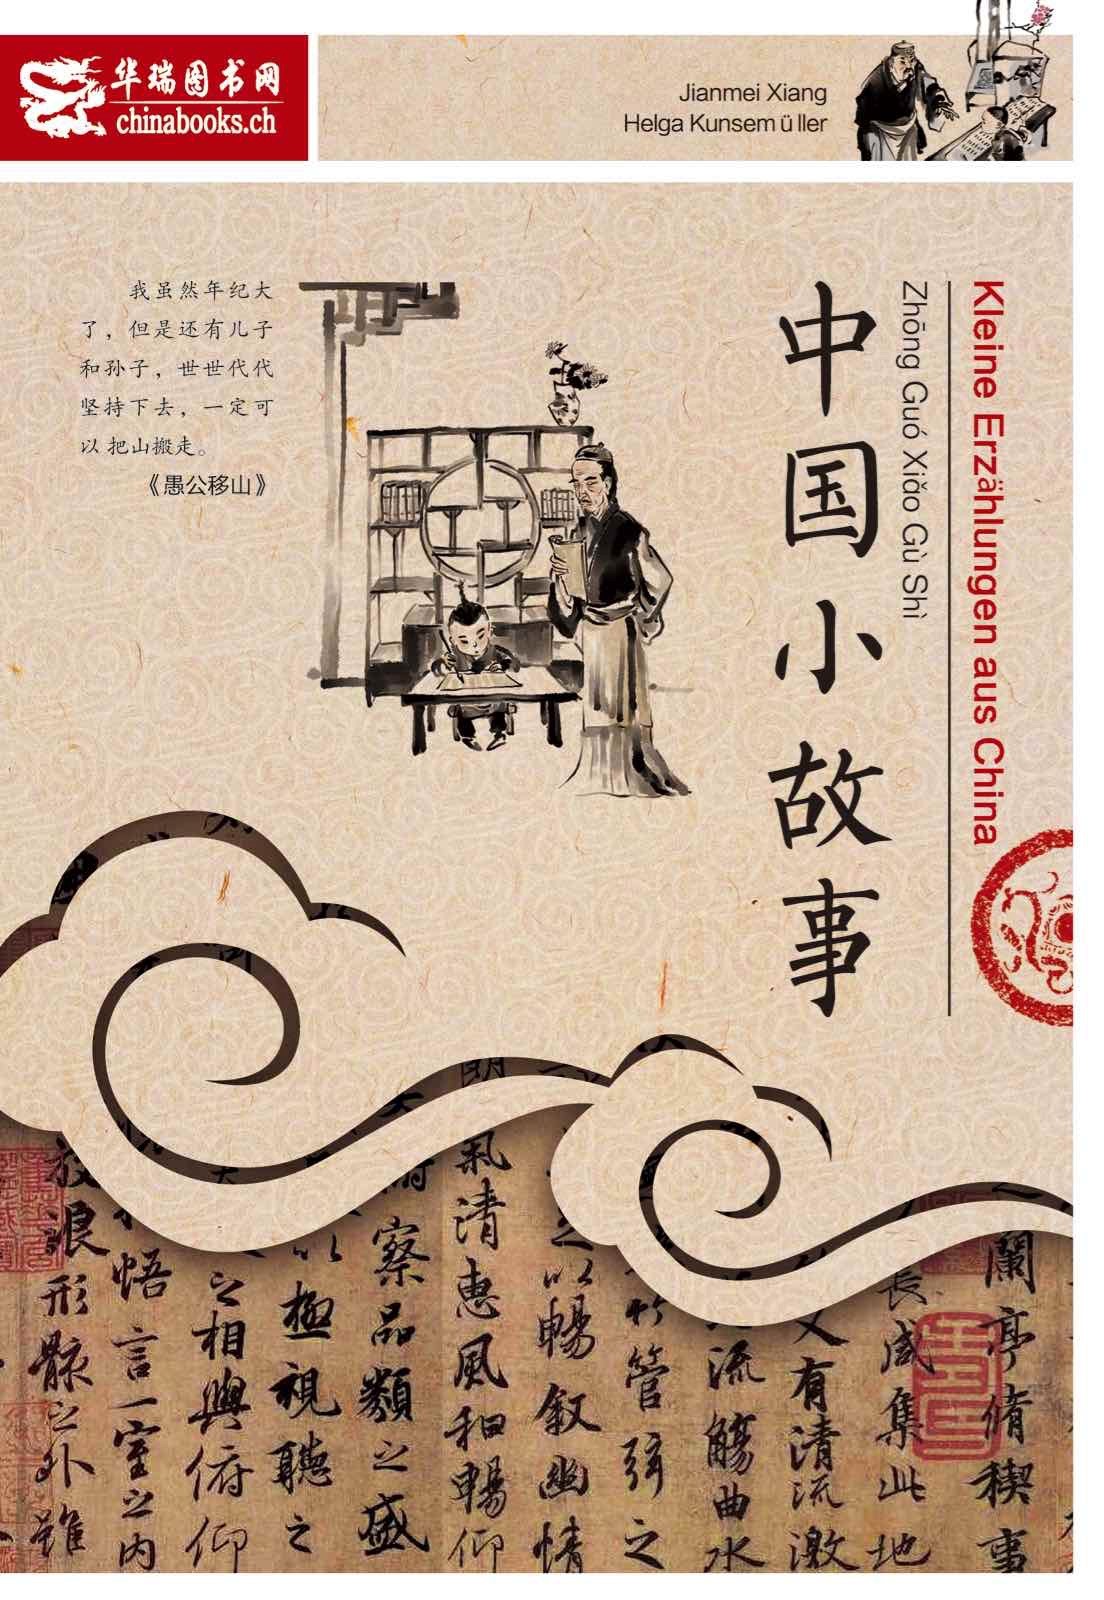 中国小故事 Kleine Erzählungen aus China - für Chinesischlernende ("Little stories from China - For learners of Chinese", bilingual Chinese-German)<br>ISBN:978-3-905816-70-9, 9783905816709